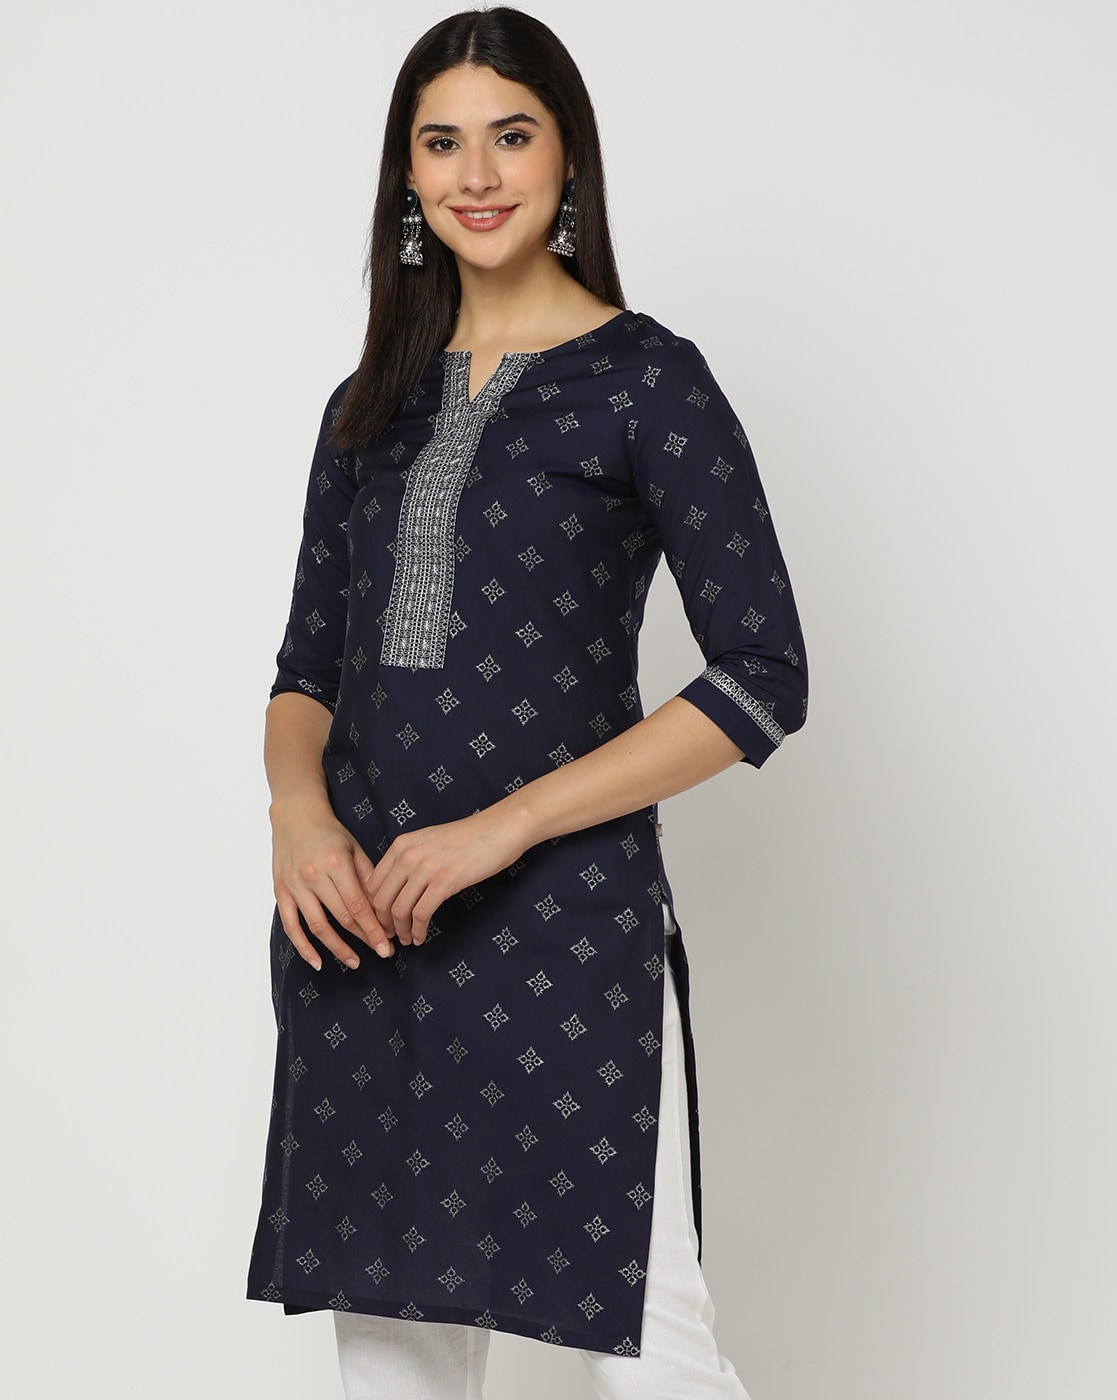 Avaasa Indian Kurta Dress And Chudidar Leggings Blue Size M - $50